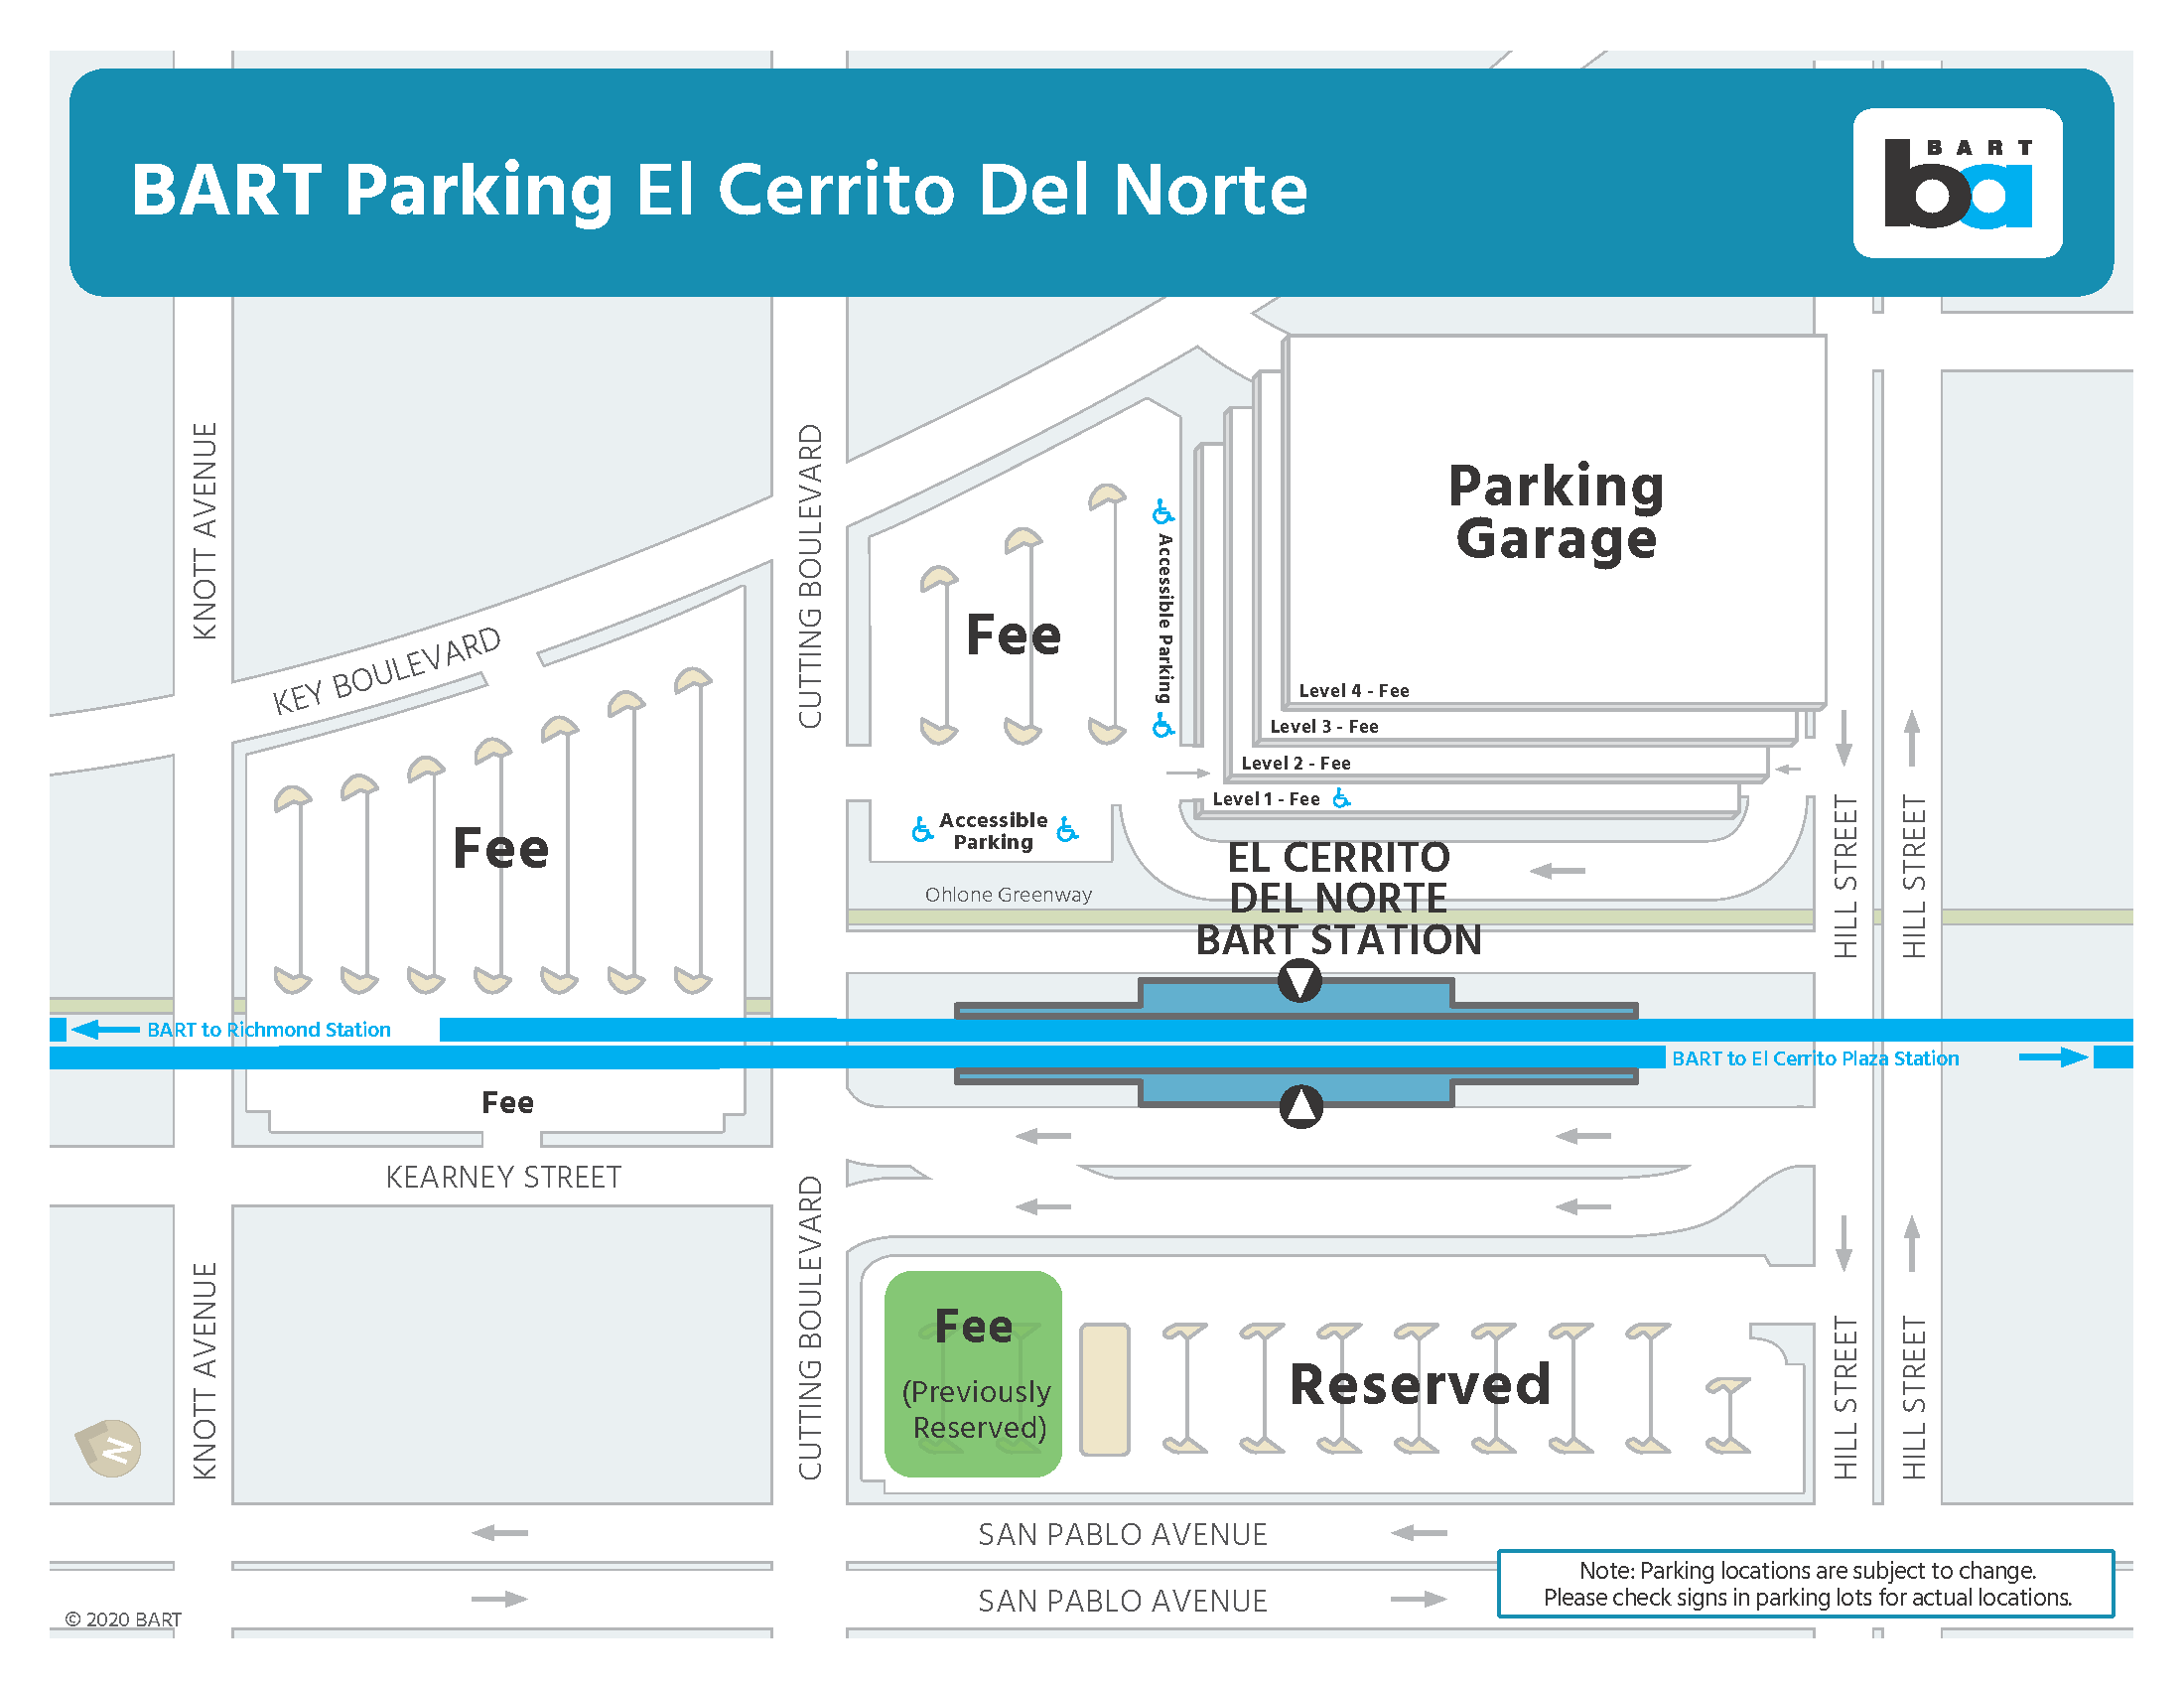 Parking areas at El Cerrito del Norte Station being reconfigured